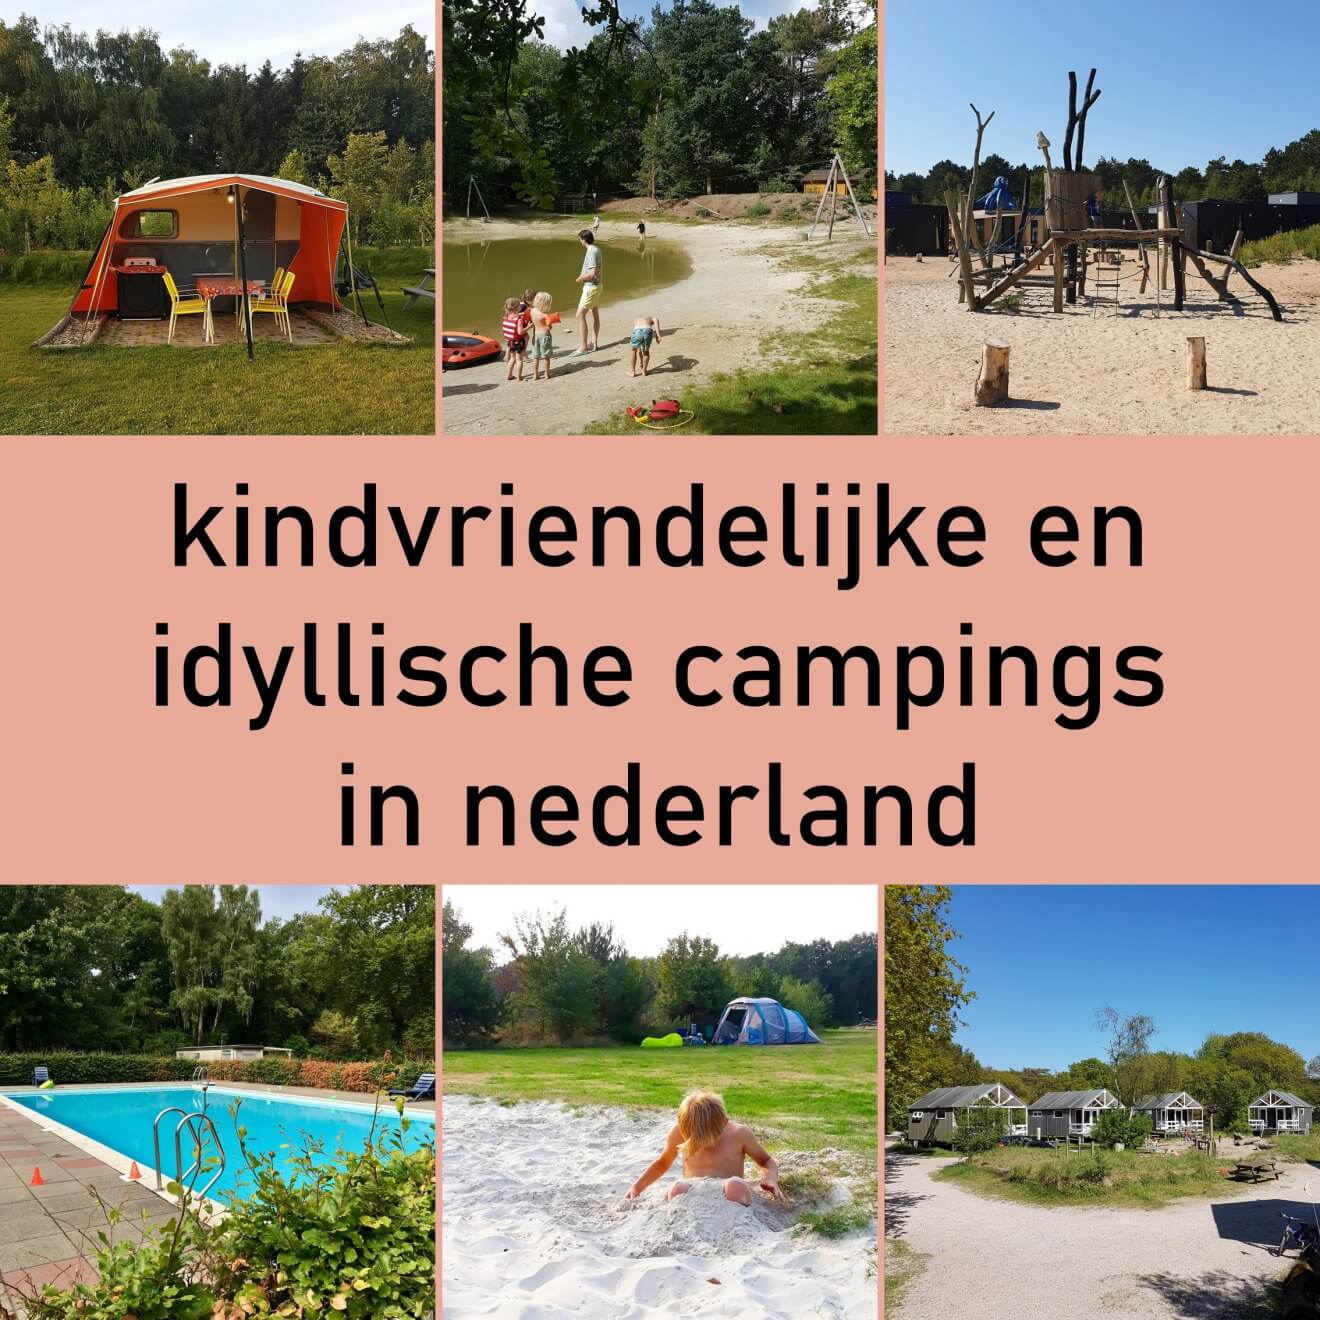 Kamperen met kinderen: idyllische kindvriendelijke campings in Nederland. Kamperen is hartstikke leuk, zeker met kinderen. Ze rennen de hele dag buiten rond met andere kinderen. Ik heb wel vrij specifieke eisen over wat ik leuk vind. Een idyllische camping zonder massavermaak, met leuke faciliteiten voor kinderen en waar je bij voorkeur ook kunt zwemmen. Het is even zoeken, maar ze zijn er wel degelijk. Ik vond een heleboel leuke idyllische kindvriendelijke campings in Nederland. Plekken die leuk zijn voor kinderen en ouders.